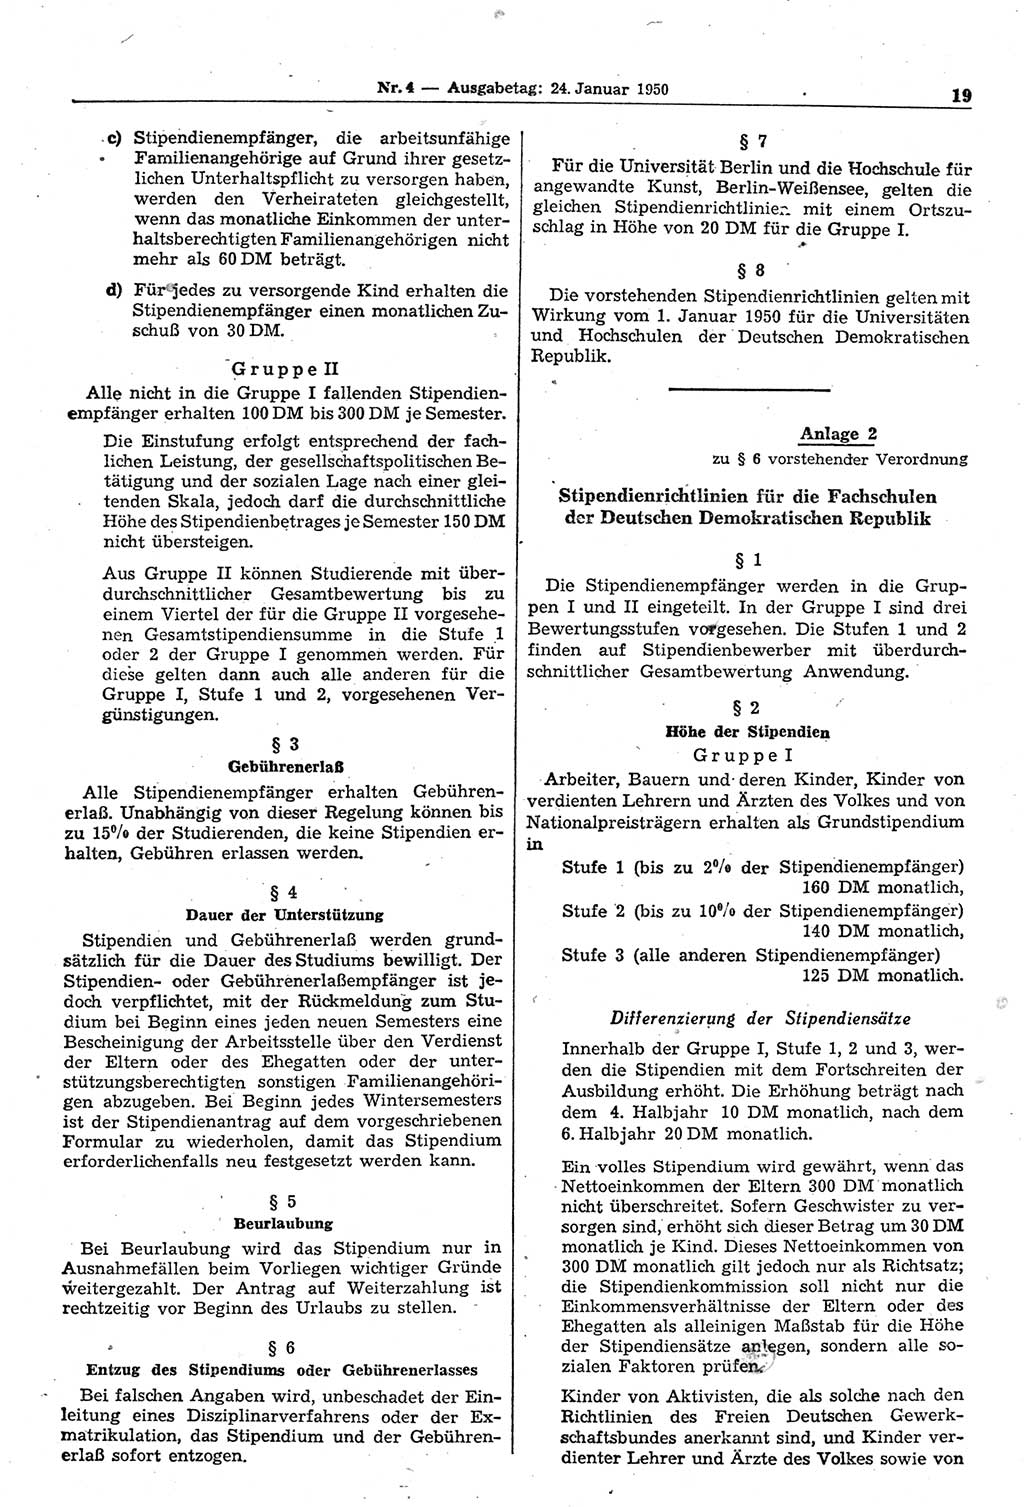 Gesetzblatt (GBl.) der Deutschen Demokratischen Republik (DDR) 1950, Seite 19 (GBl. DDR 1950, S. 19)